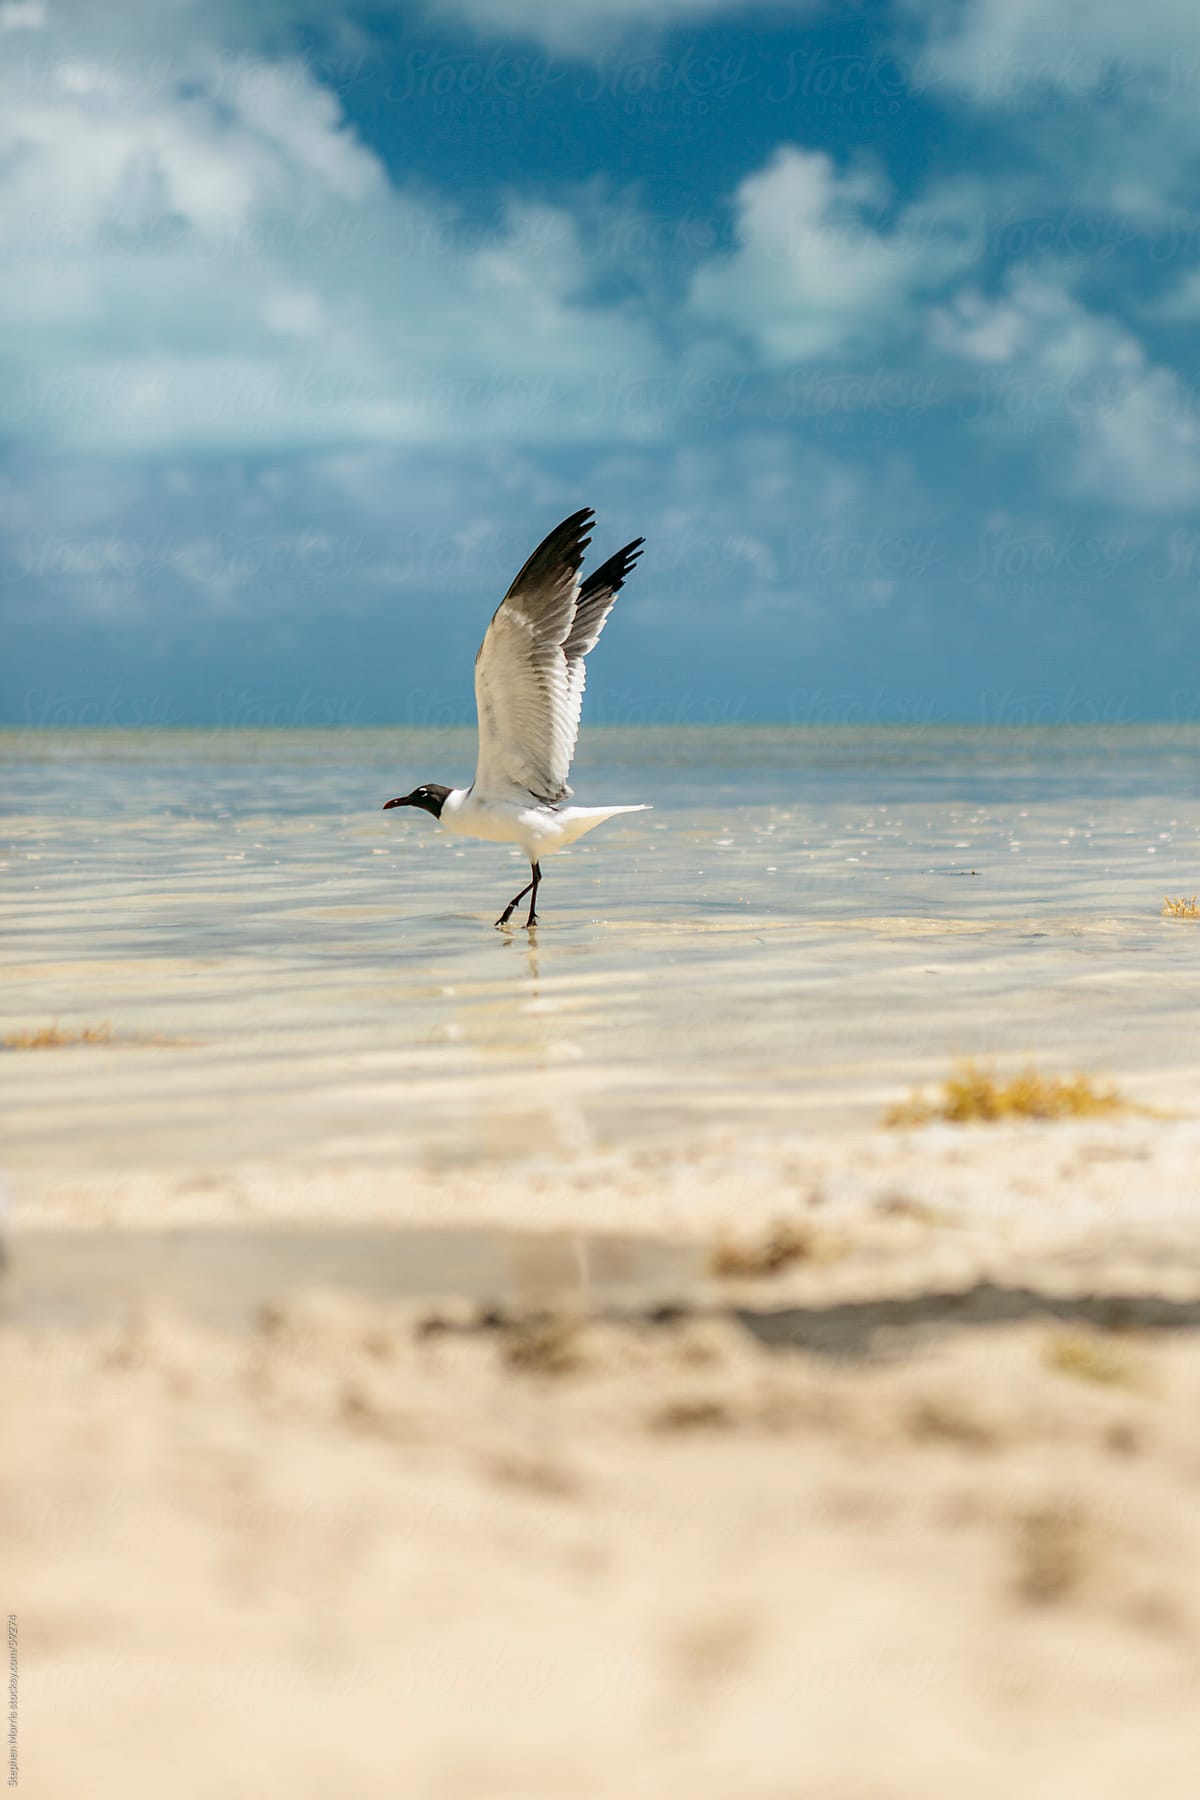 Seagull Taking Flight on Beach